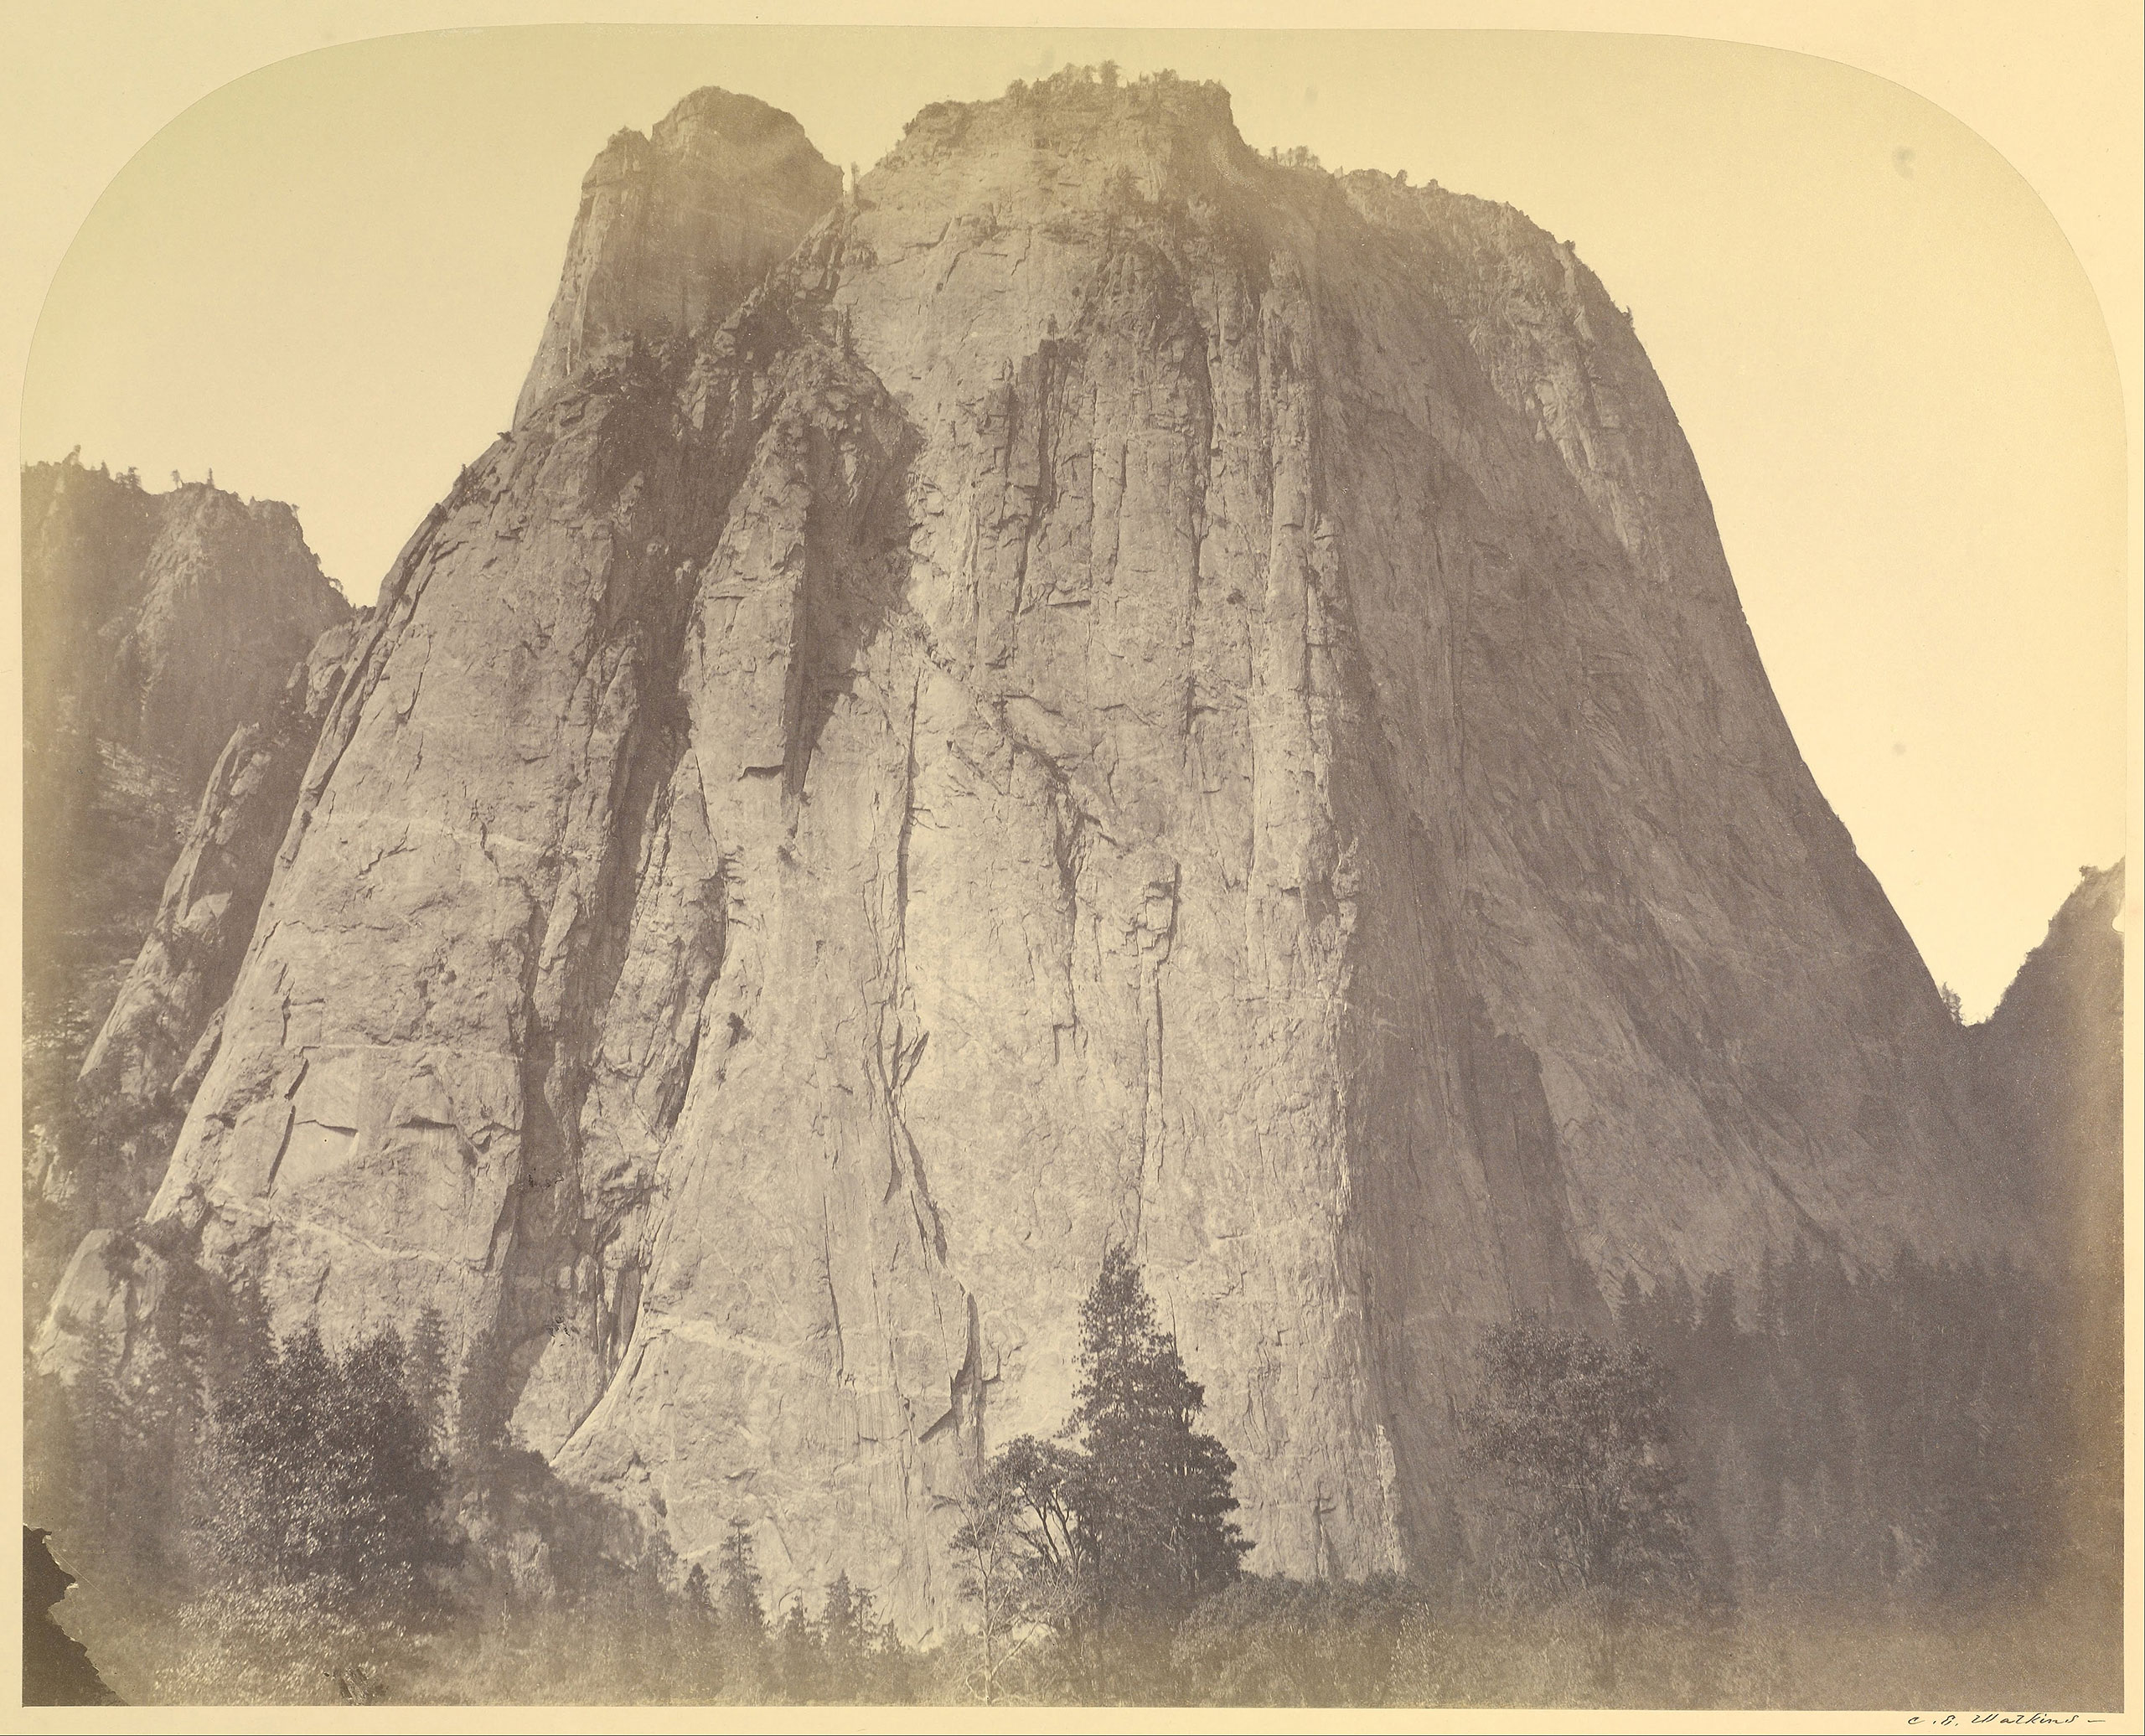 Cathedral Rock, Yosemite by Carleton Watkins, 1861.